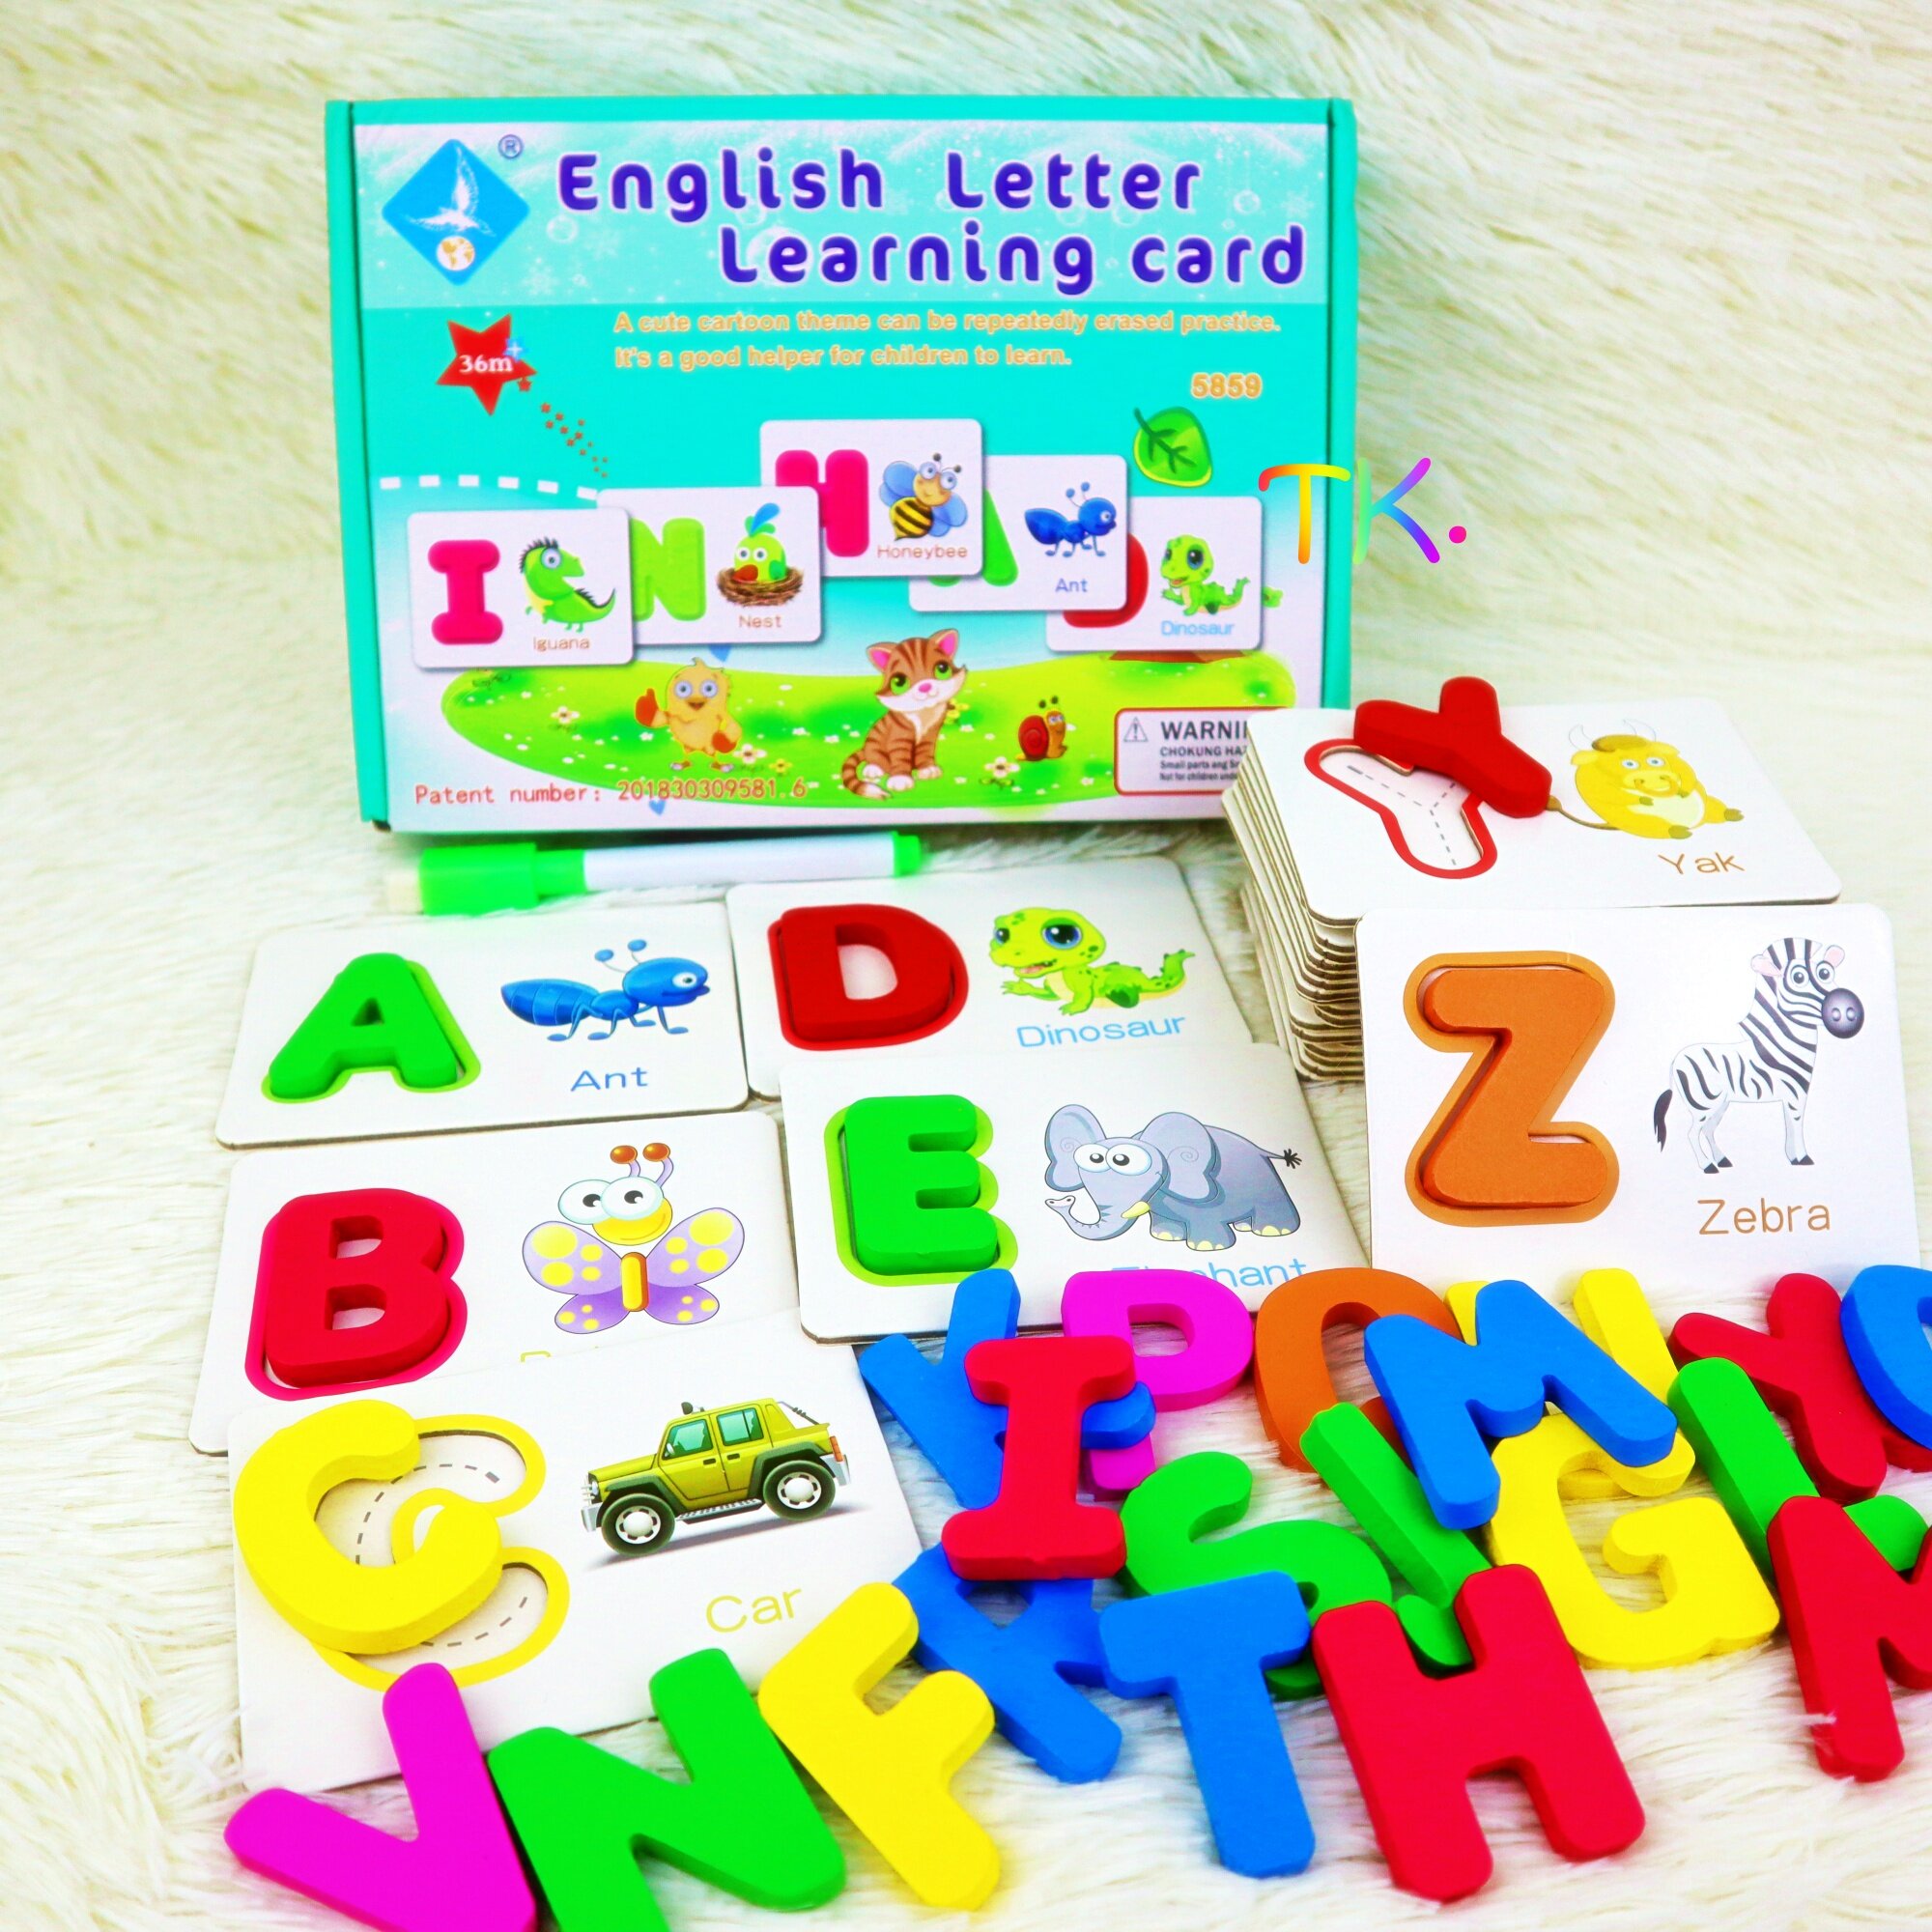 แฟลชการ์ดคำศัพท์ A-Z ตัวอักษรเป็นไม้ ฝึกเขียนภาษาอังกฤษ แถมปากกาเขียนลบได้ English Letter Learning Card Flash card บัตรคำศัพท์ ฝึกเขียนABC วางบล็อกไม้